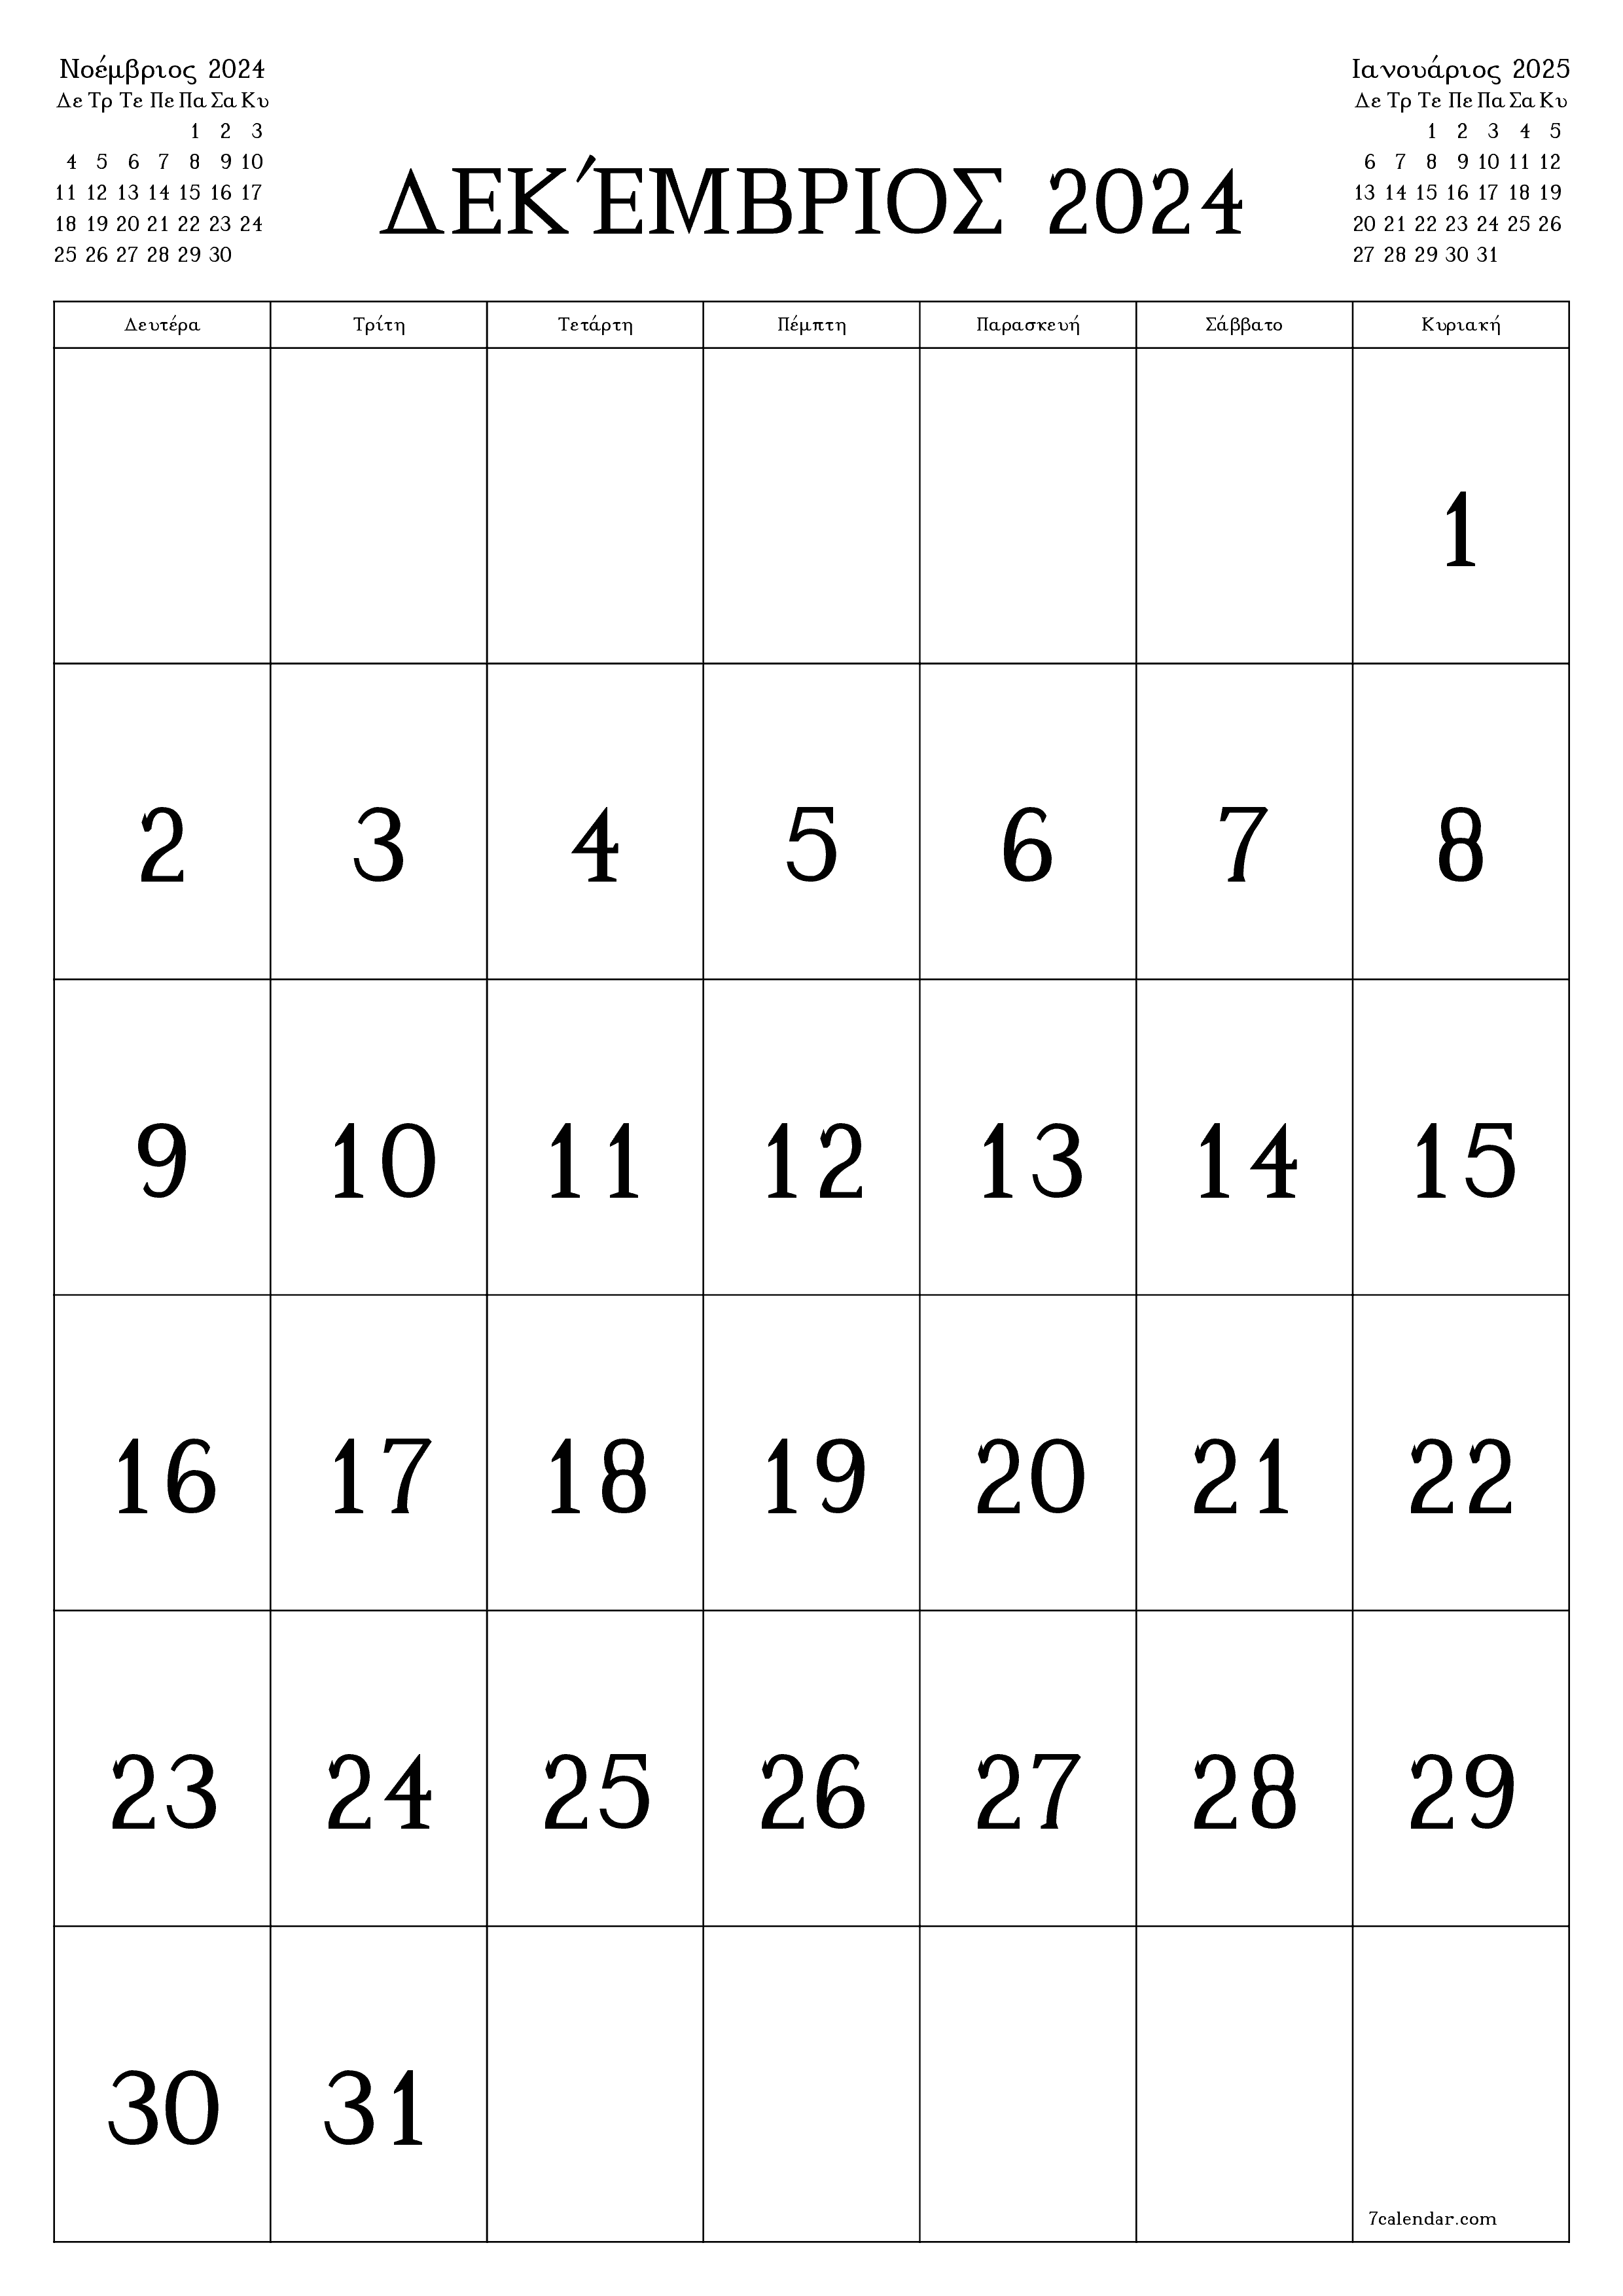 εκτυπώσιμο ημερολόγιο ημερολόγιο τοίχου πρότυπο ημερολογίου δωρεάν ημερολόγιοκατακόρυφος Μηνιαίο Ημερολόγιο Δεκέμβριος (Δεκ) 2024